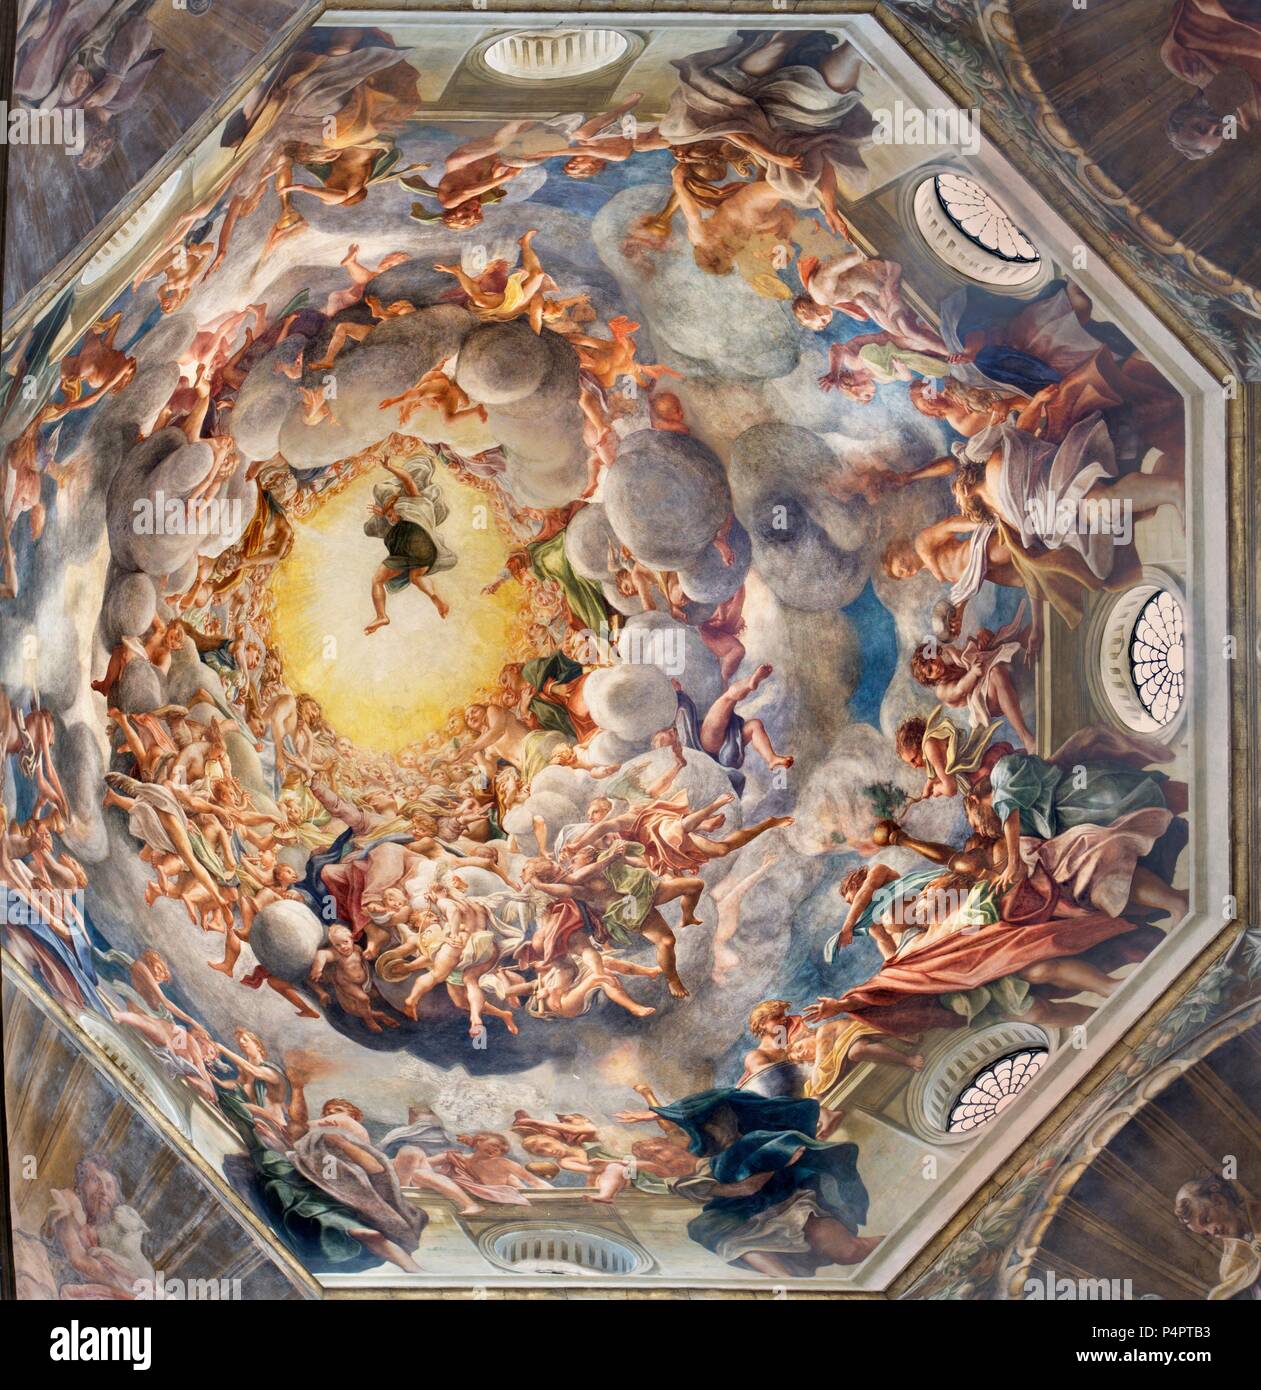 PARMA, Italien - 16 April 2018: Detail der Fresken der Assumpcion der Jungfrau Maria in der Kuppel des Duomo von Antonio Allegri (Correggio - 1526-1530). Stockfoto